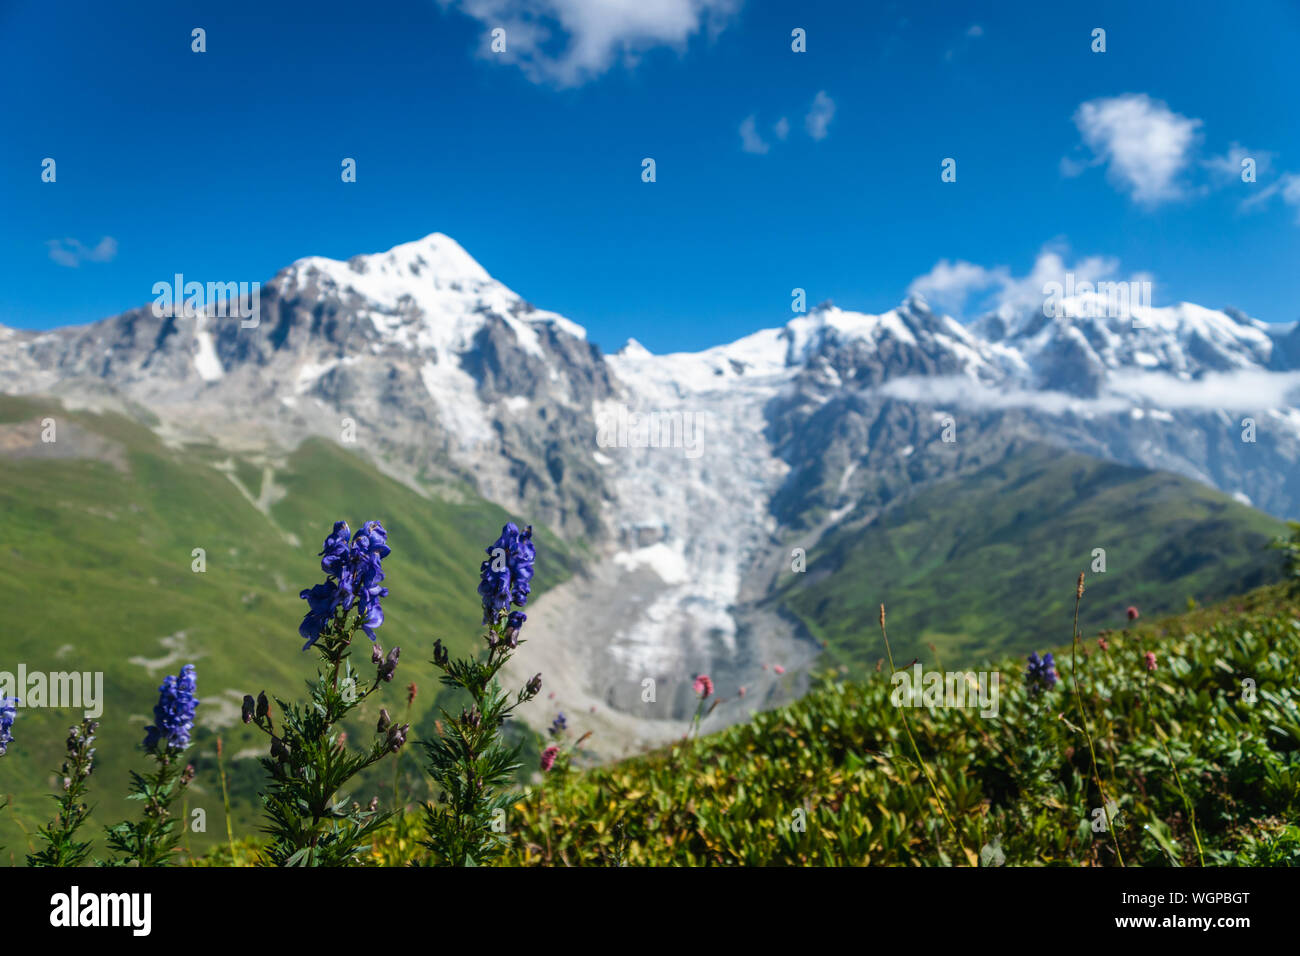 Paysage de Svaneti avec glacier et montagne dans le dos et des fleurs au premier plan, près de Mestia village dans la région de Svaneti, Georgia. Banque D'Images